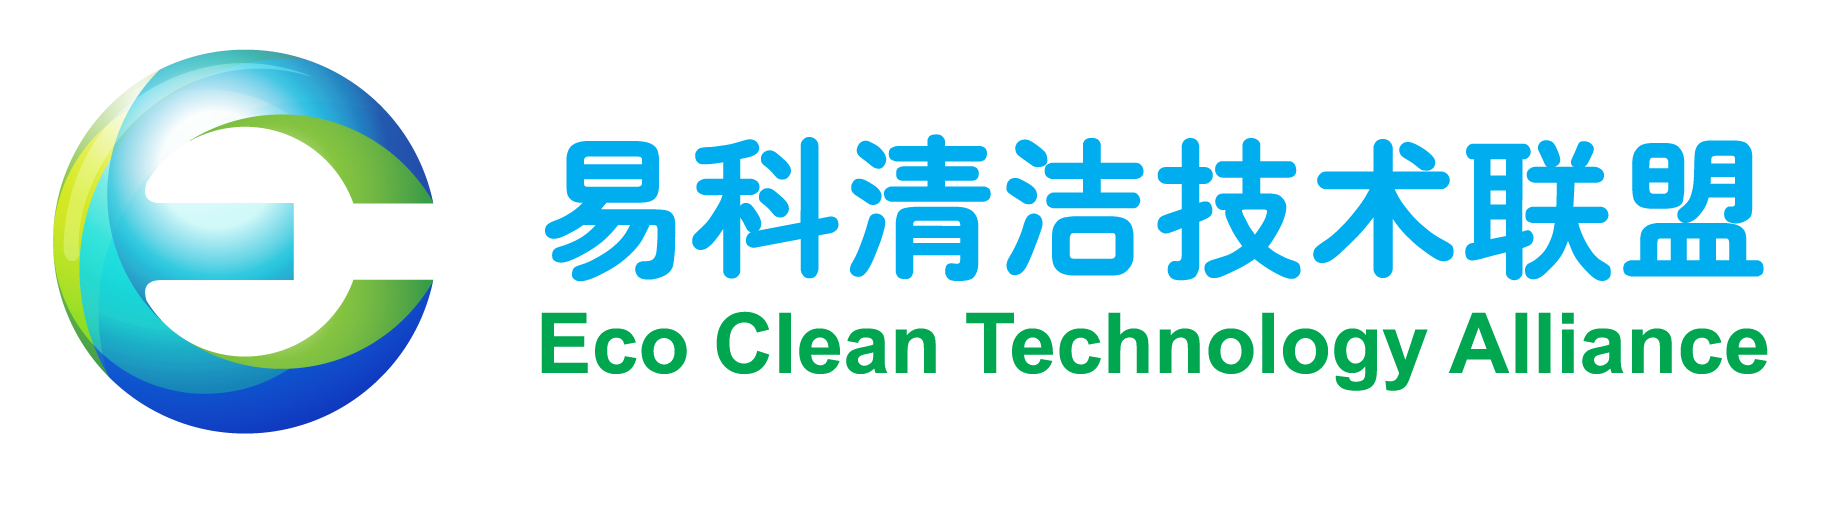 易科清洁技术联盟